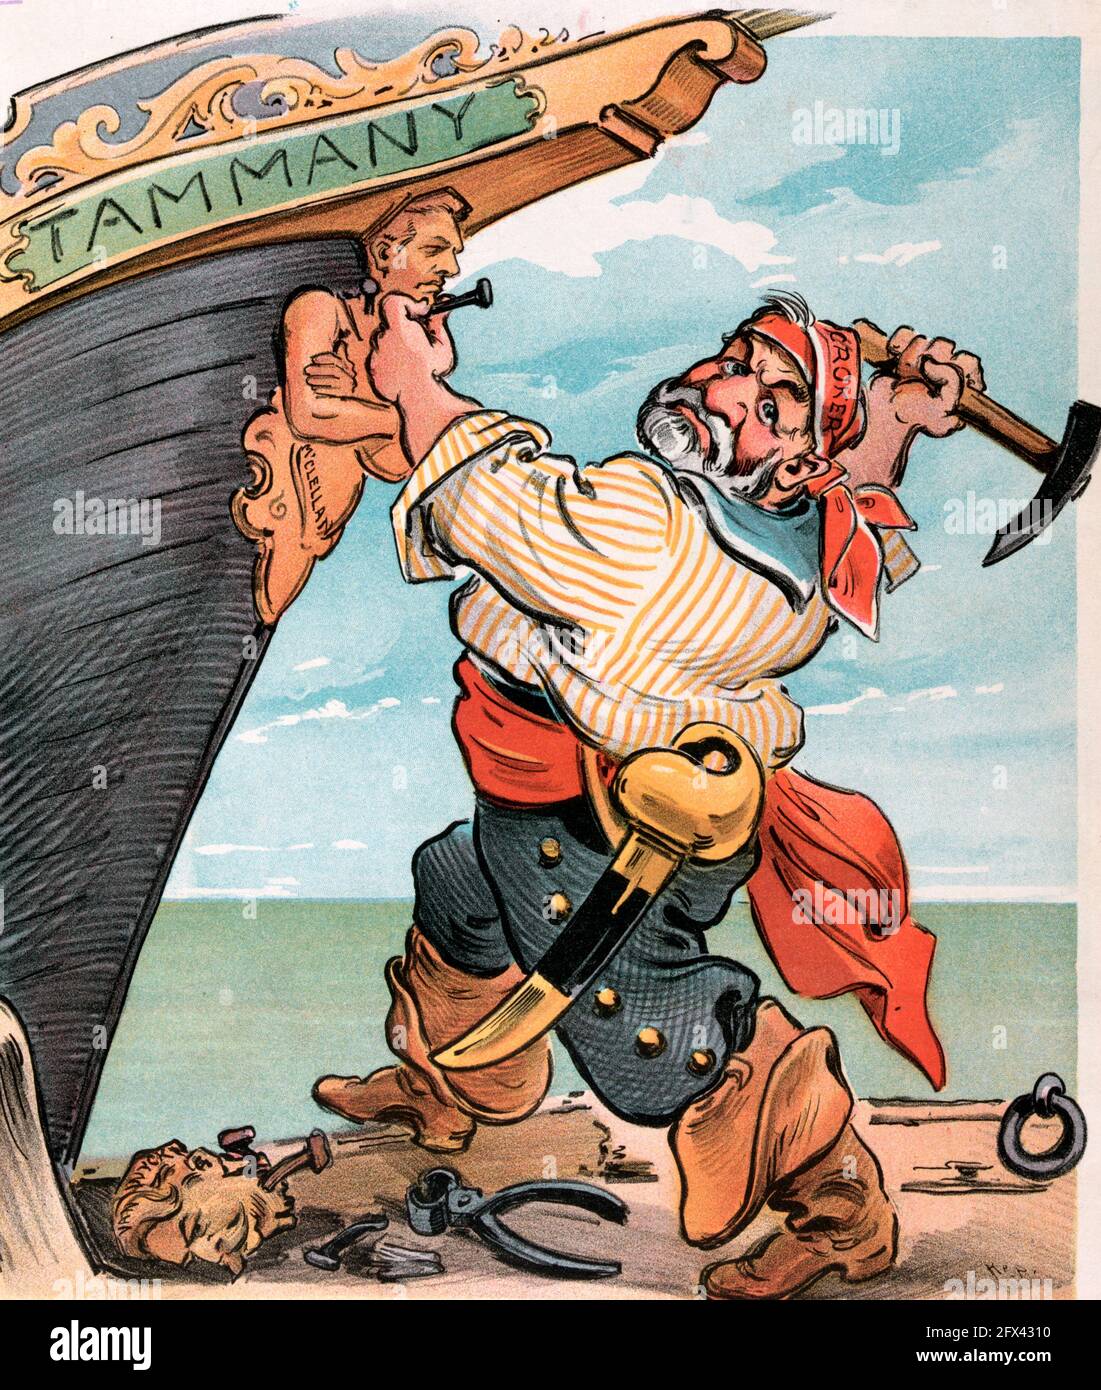 Une autre figure de proue - l'illustration montre le patron de Tammany Hall Richard Croker comme un pirate clouant une nouvelle figure de proue appelée 'McClellan' à l'arc d'un navire étiqueté 'Tammany'; l'ancienne figure de proue appelée 'Van Wyck' se trouve sur le sol, Political Cartoon, 1903 Banque D'Images